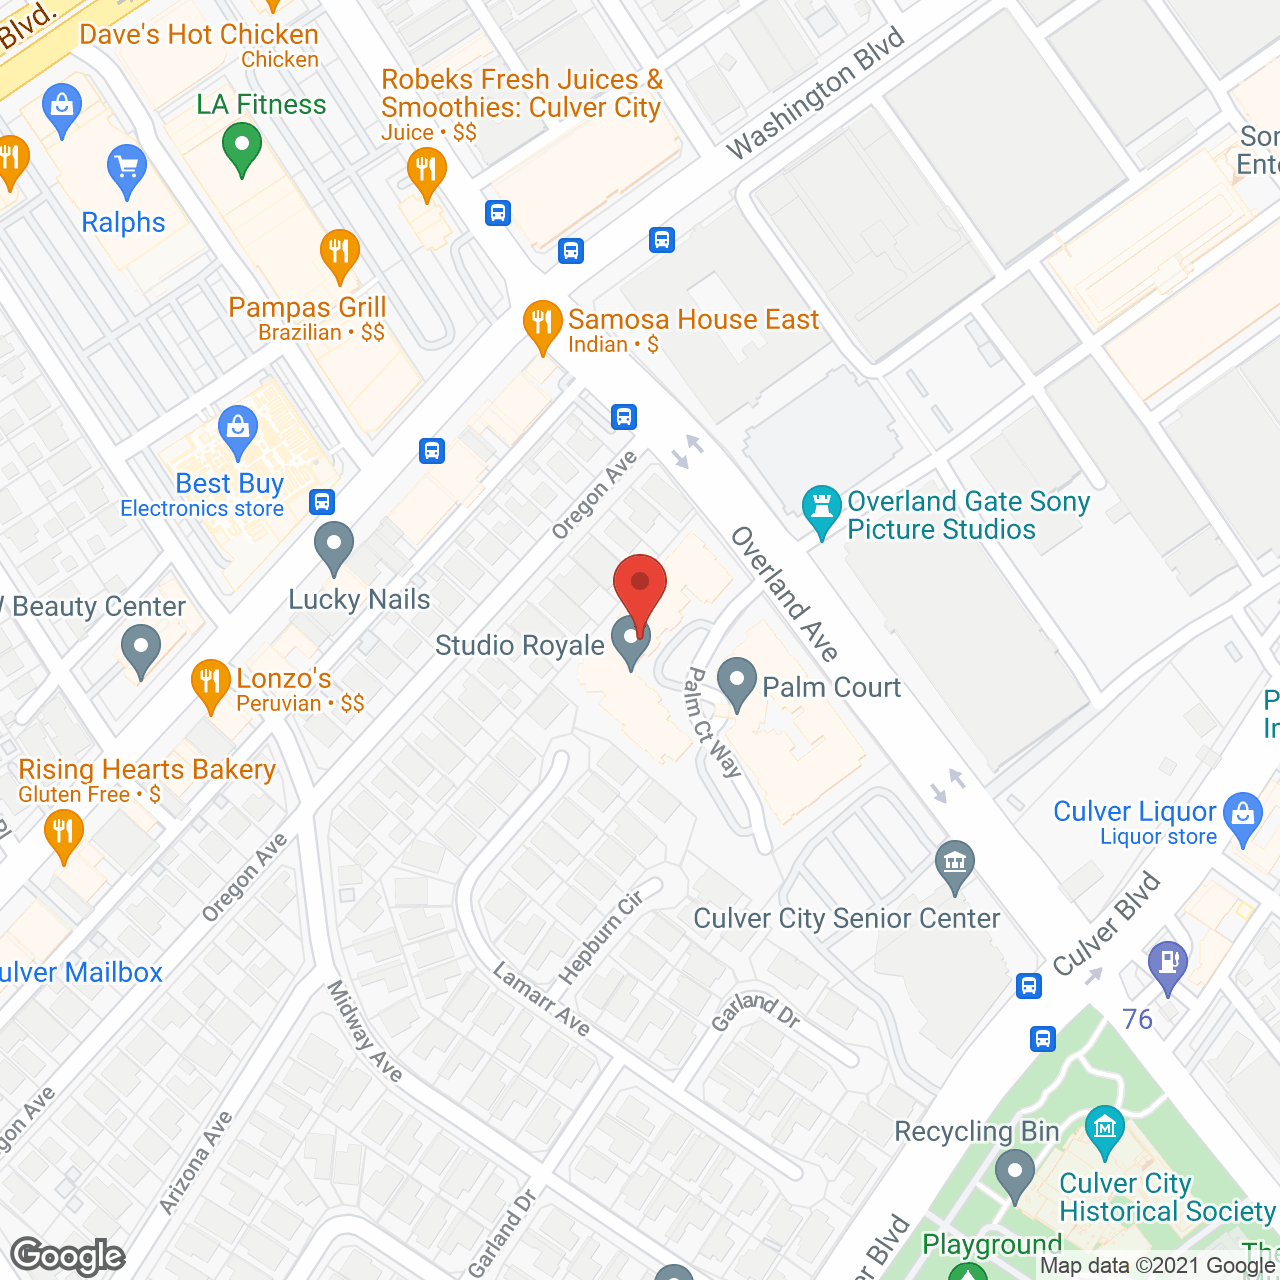 Studio Royale in google map